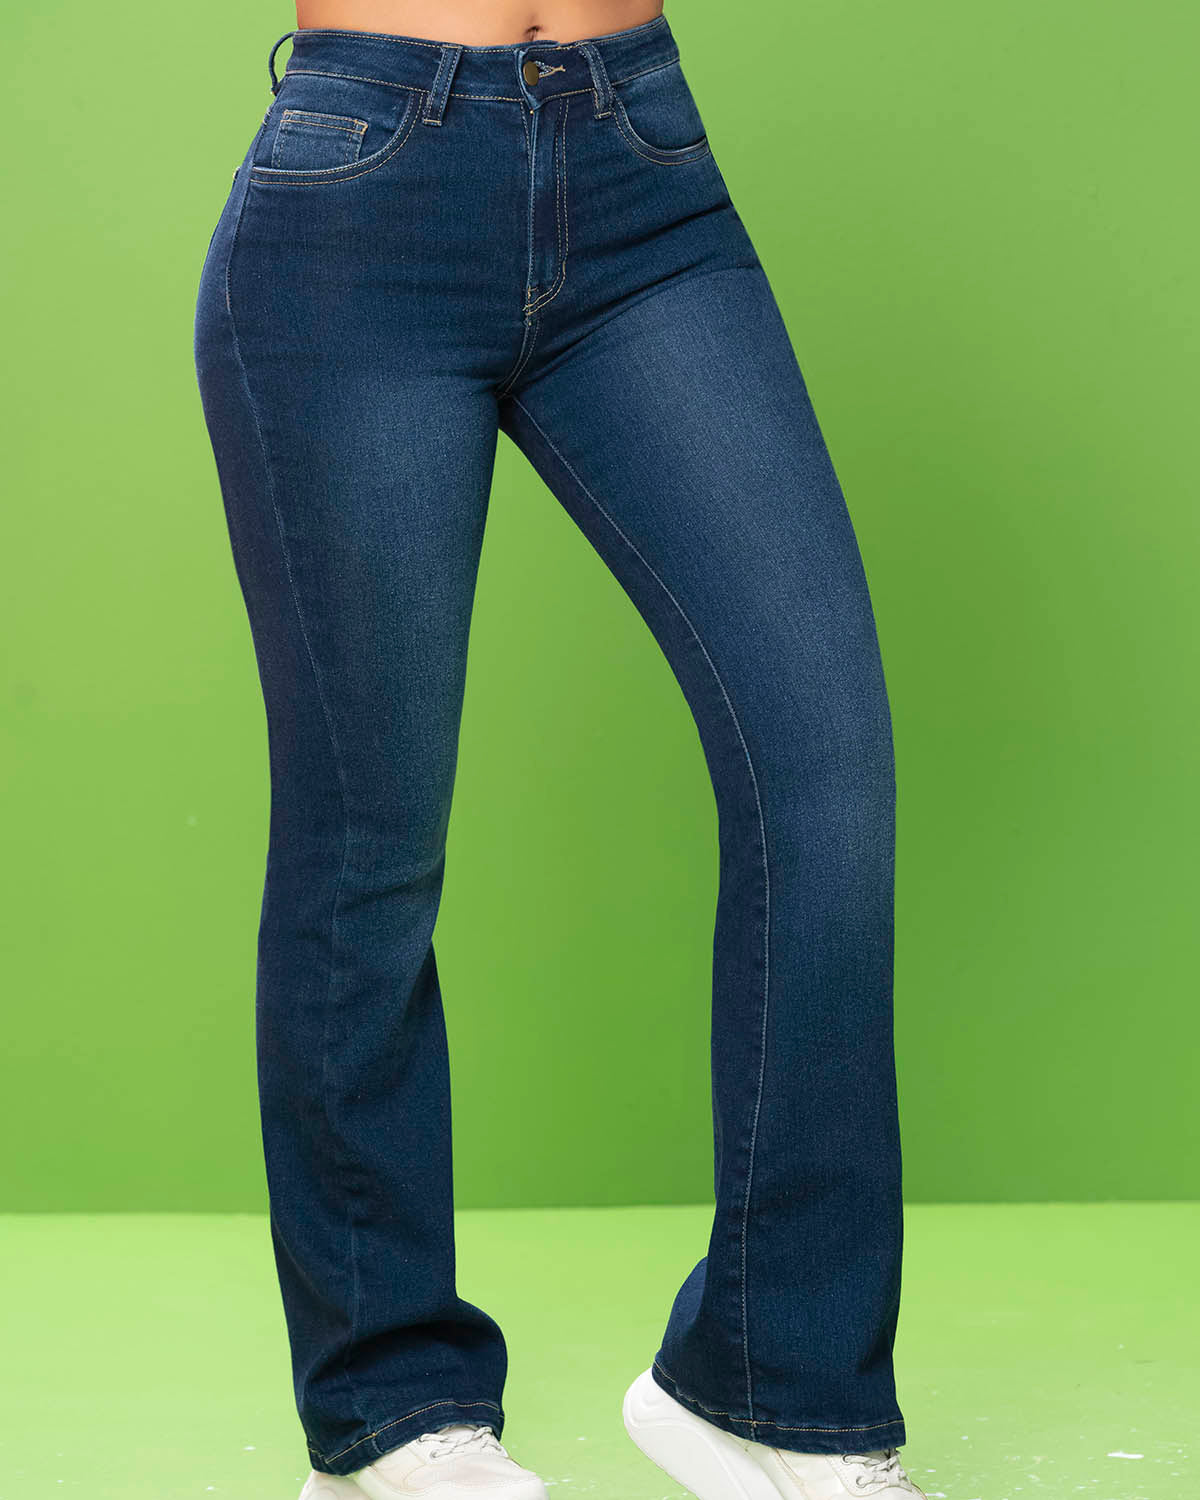 Jean Azul Oscuro Mujer marca Ryco Jeans al por mayor en Gspath